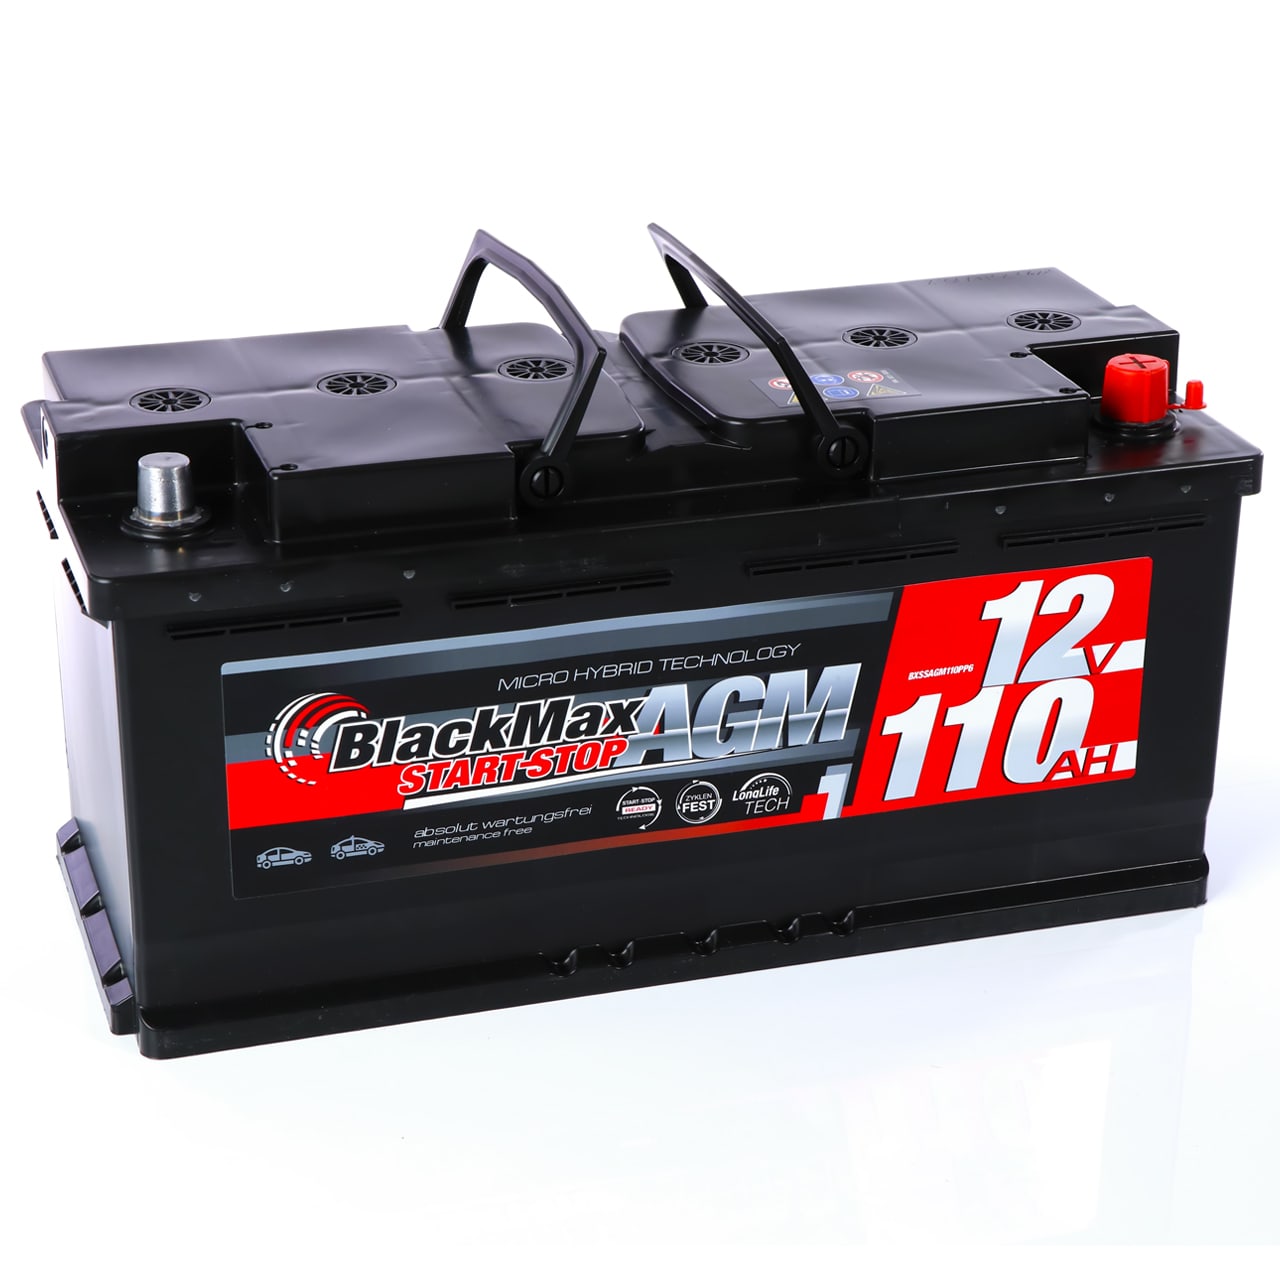 Autobatterie-Ladegerät Feuerfest Ein-Klick-Switching 12v 24v